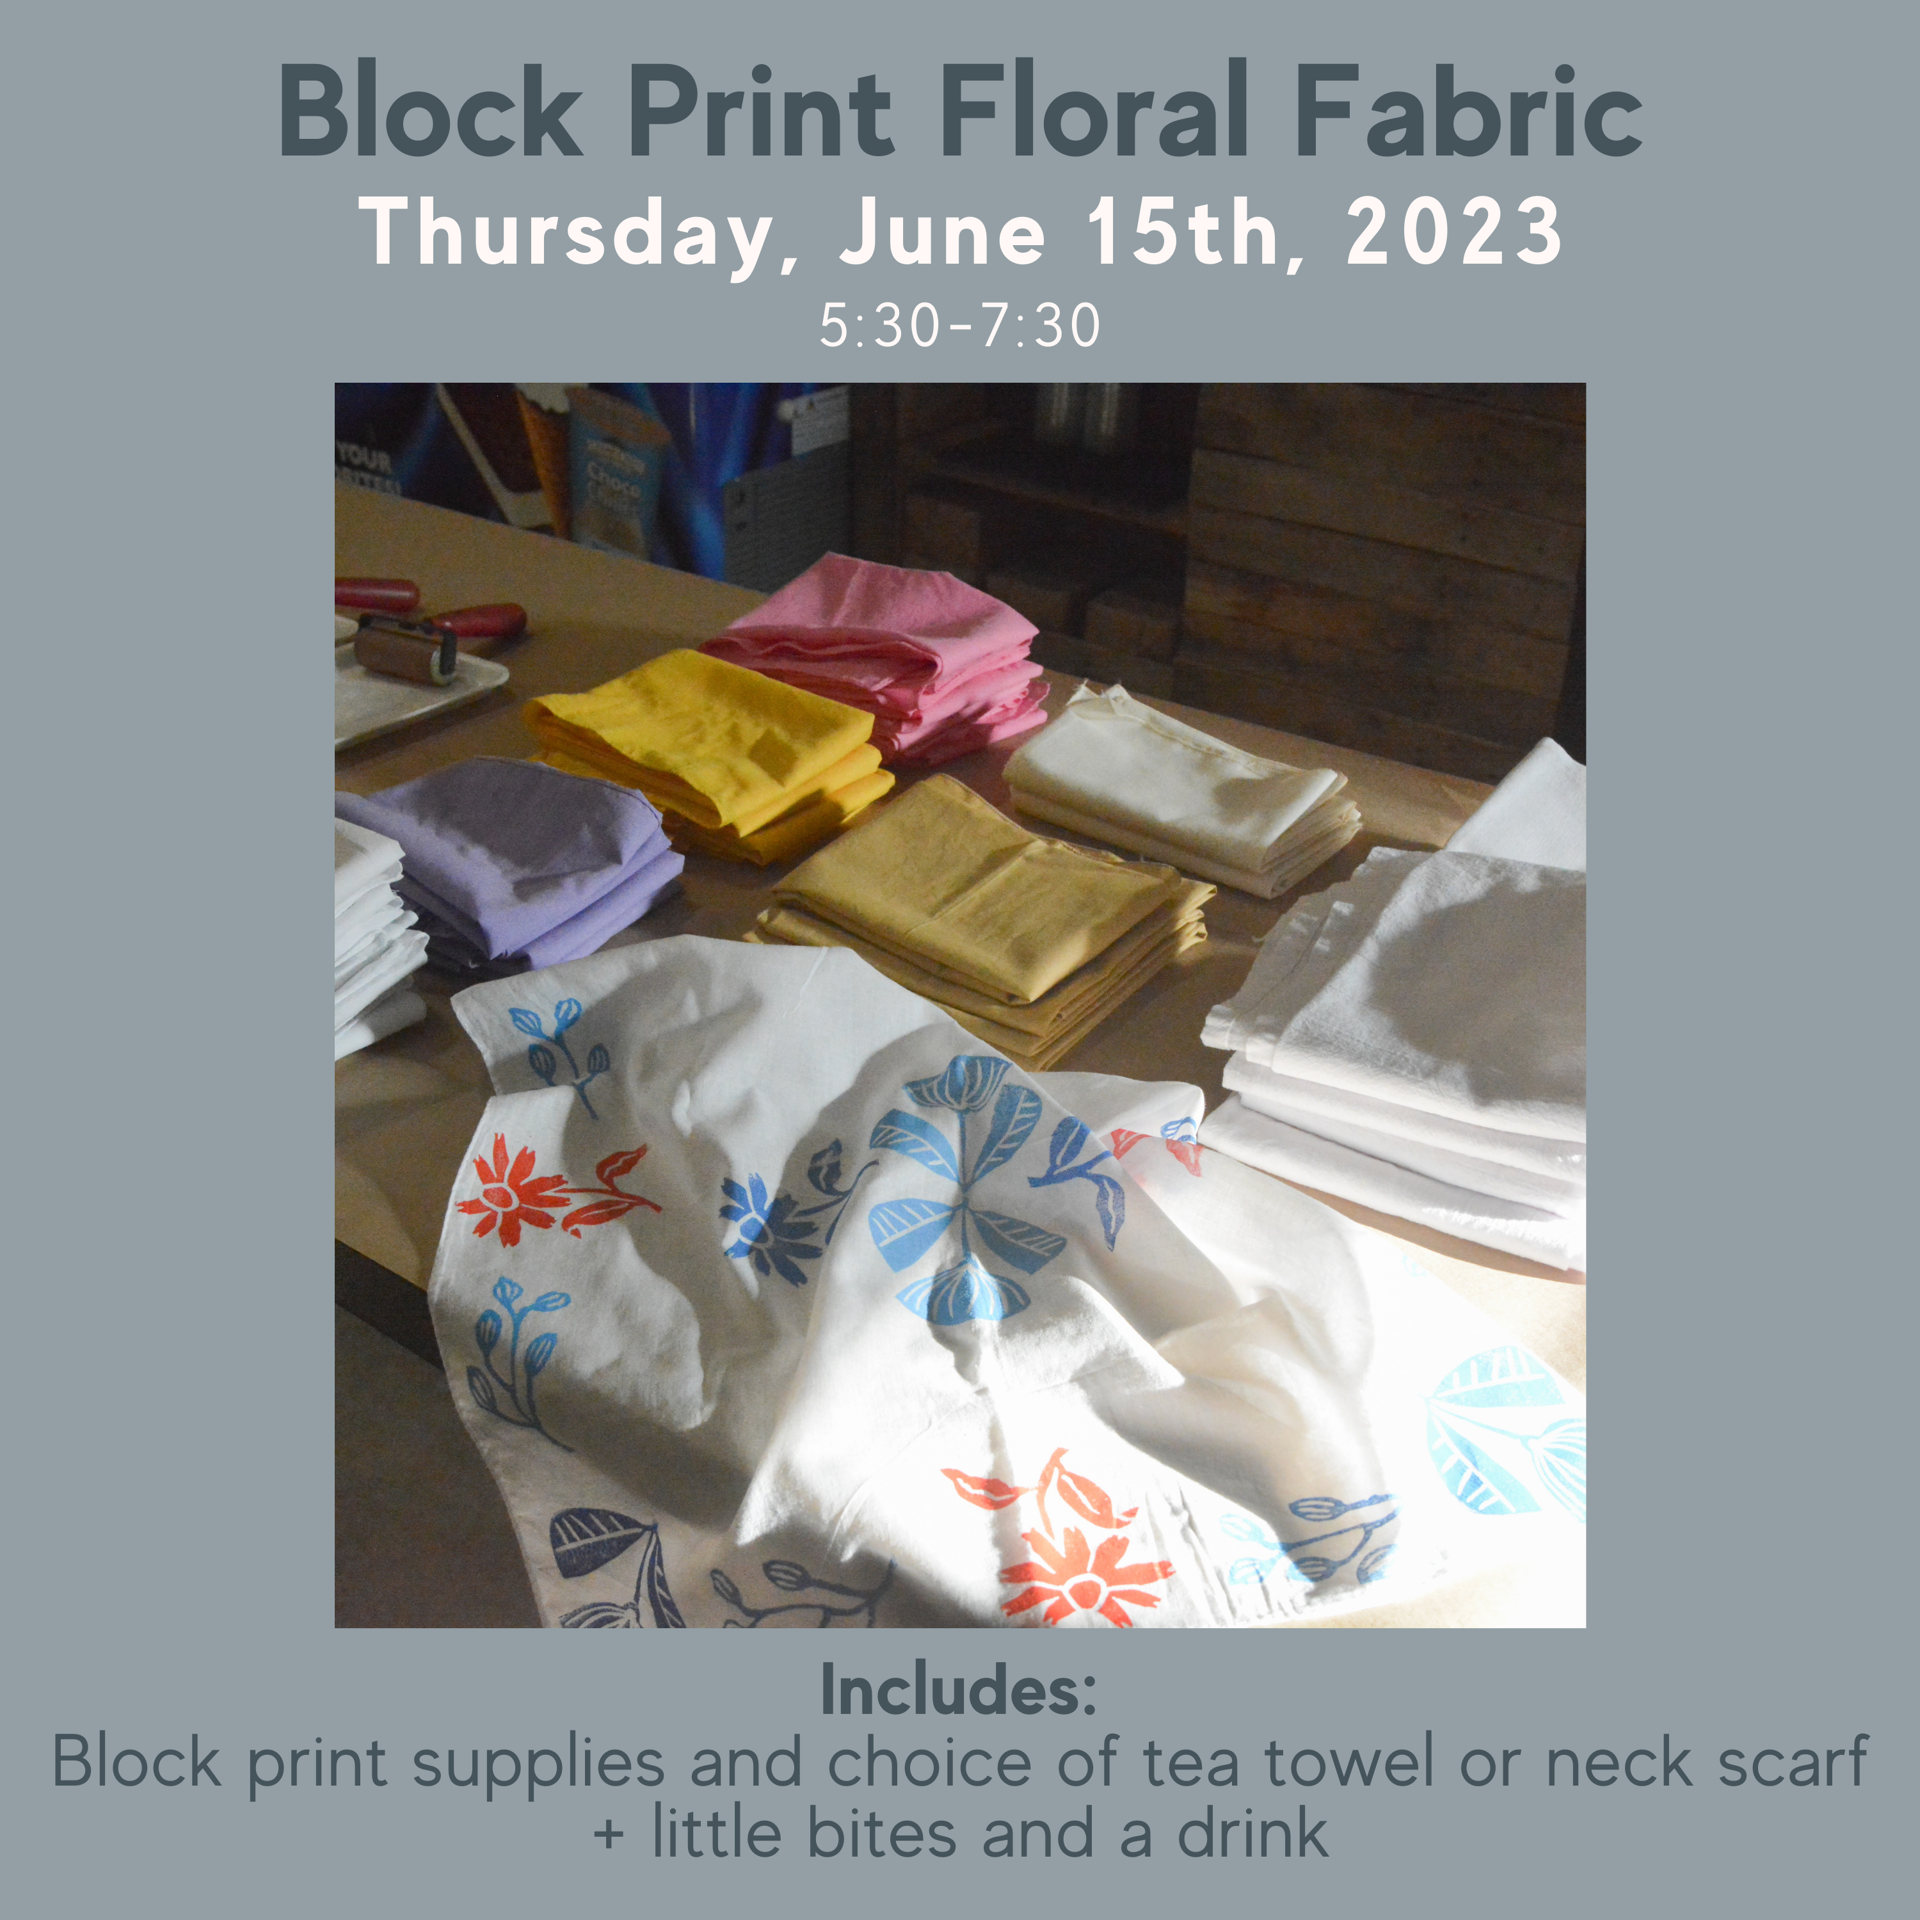 Block Print Florals